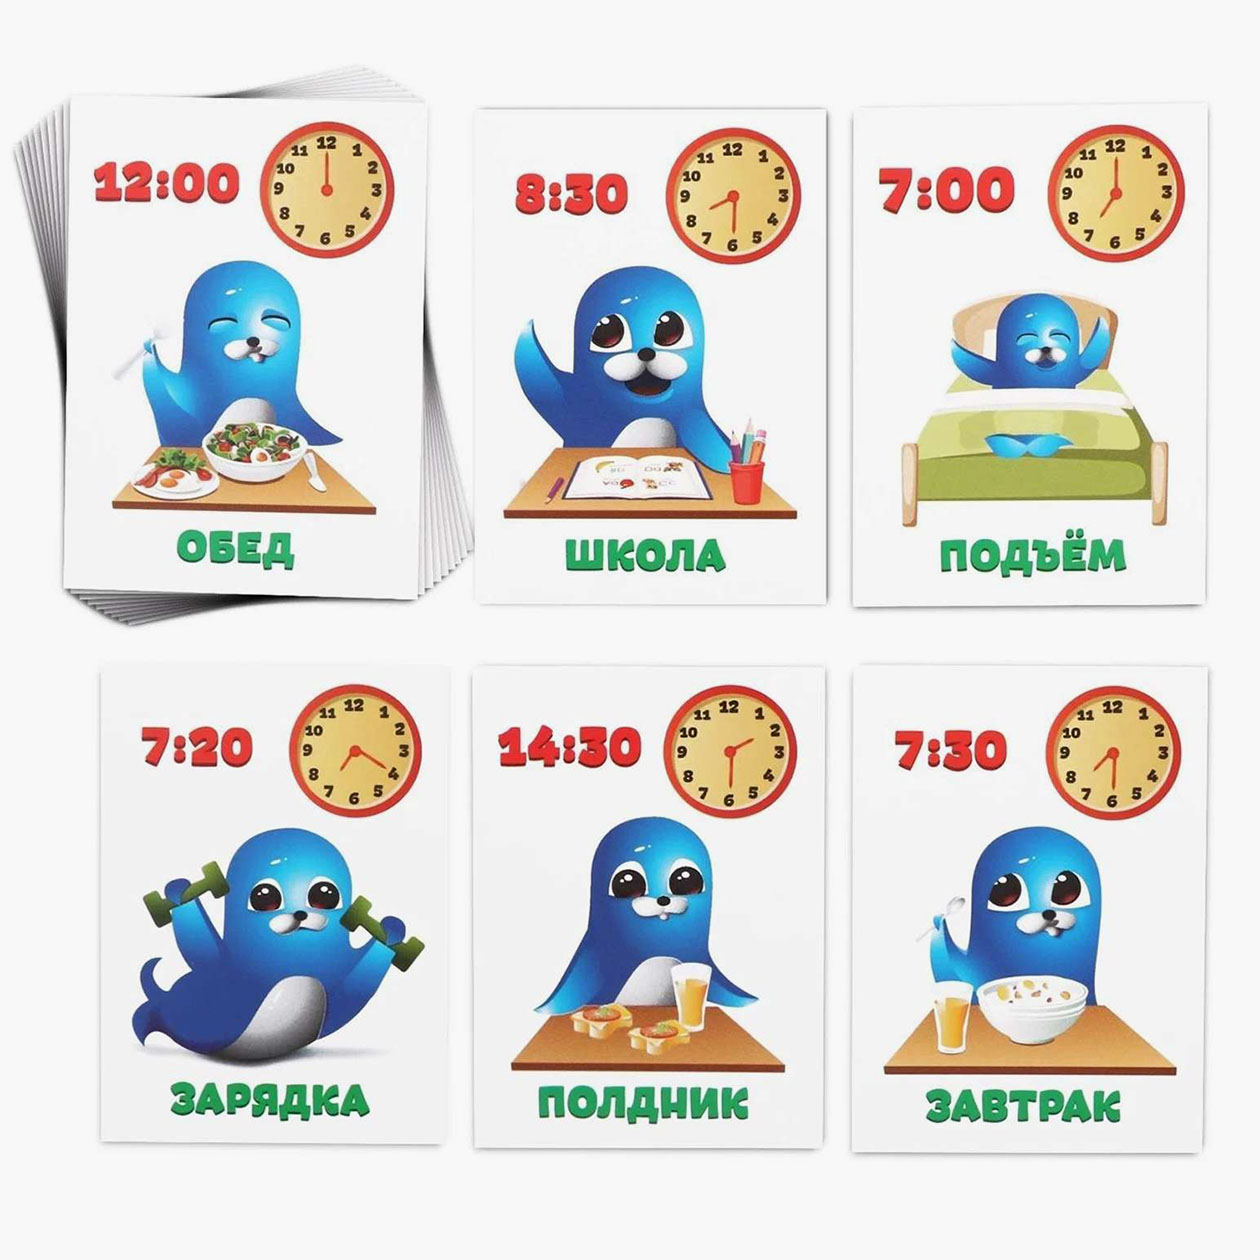 Такие карточки можно купить на маркетплейсах, но лучше нарисовать свои — с распорядком дня ребенка. Источник: ozon.ru